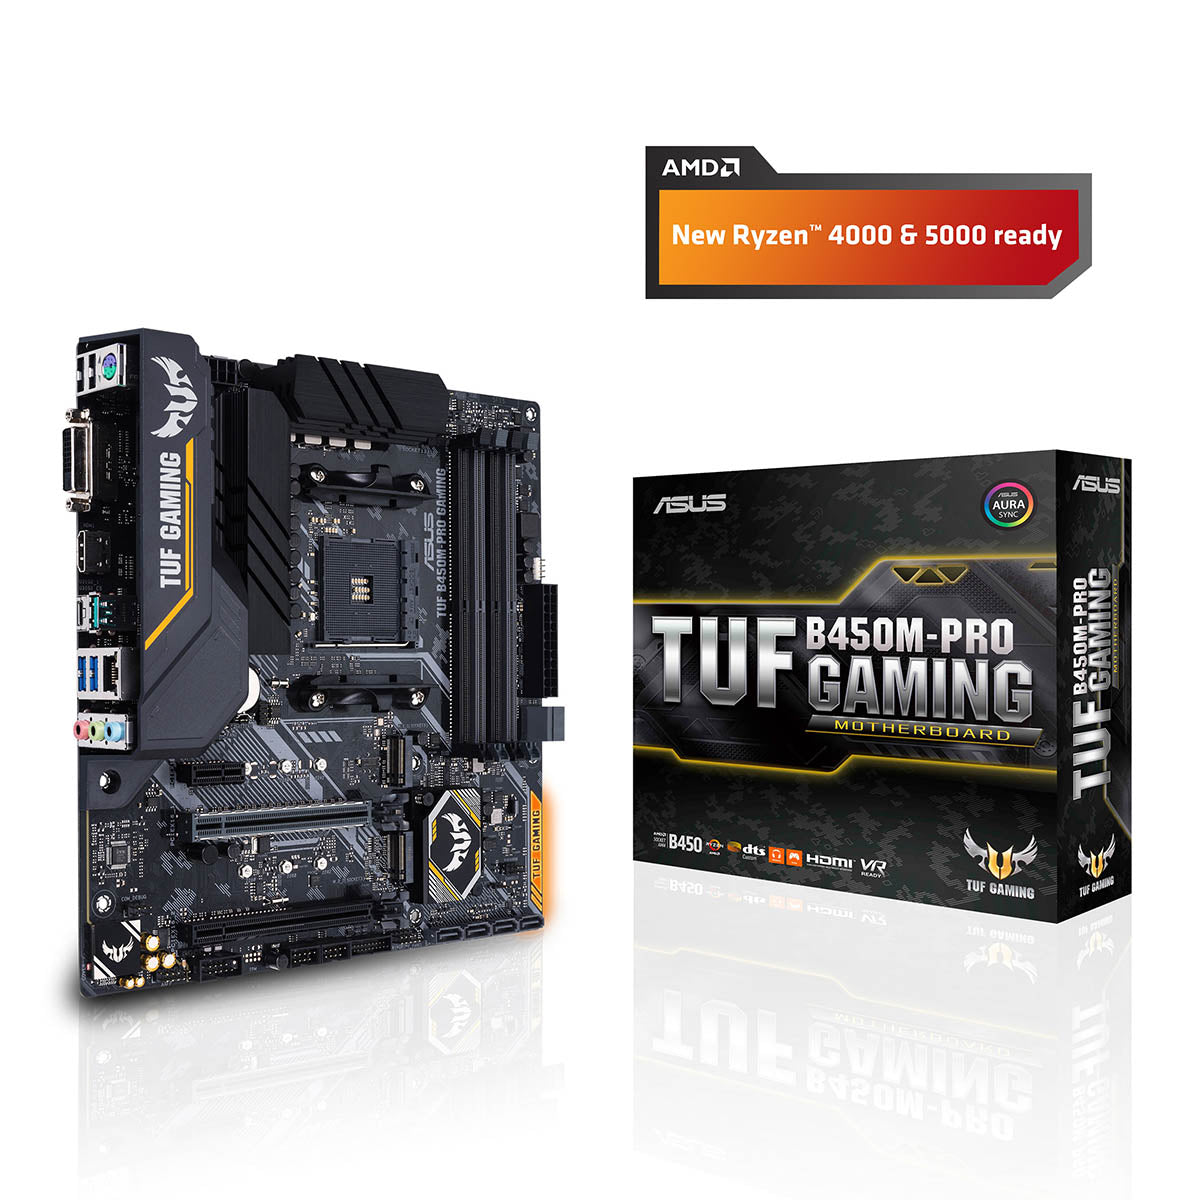 Asus TUF B450M-PRO गेमिंग AMD AM4 माइक्रो-ATX मदरबोर्ड ऑरा सिंक RGB के साथ